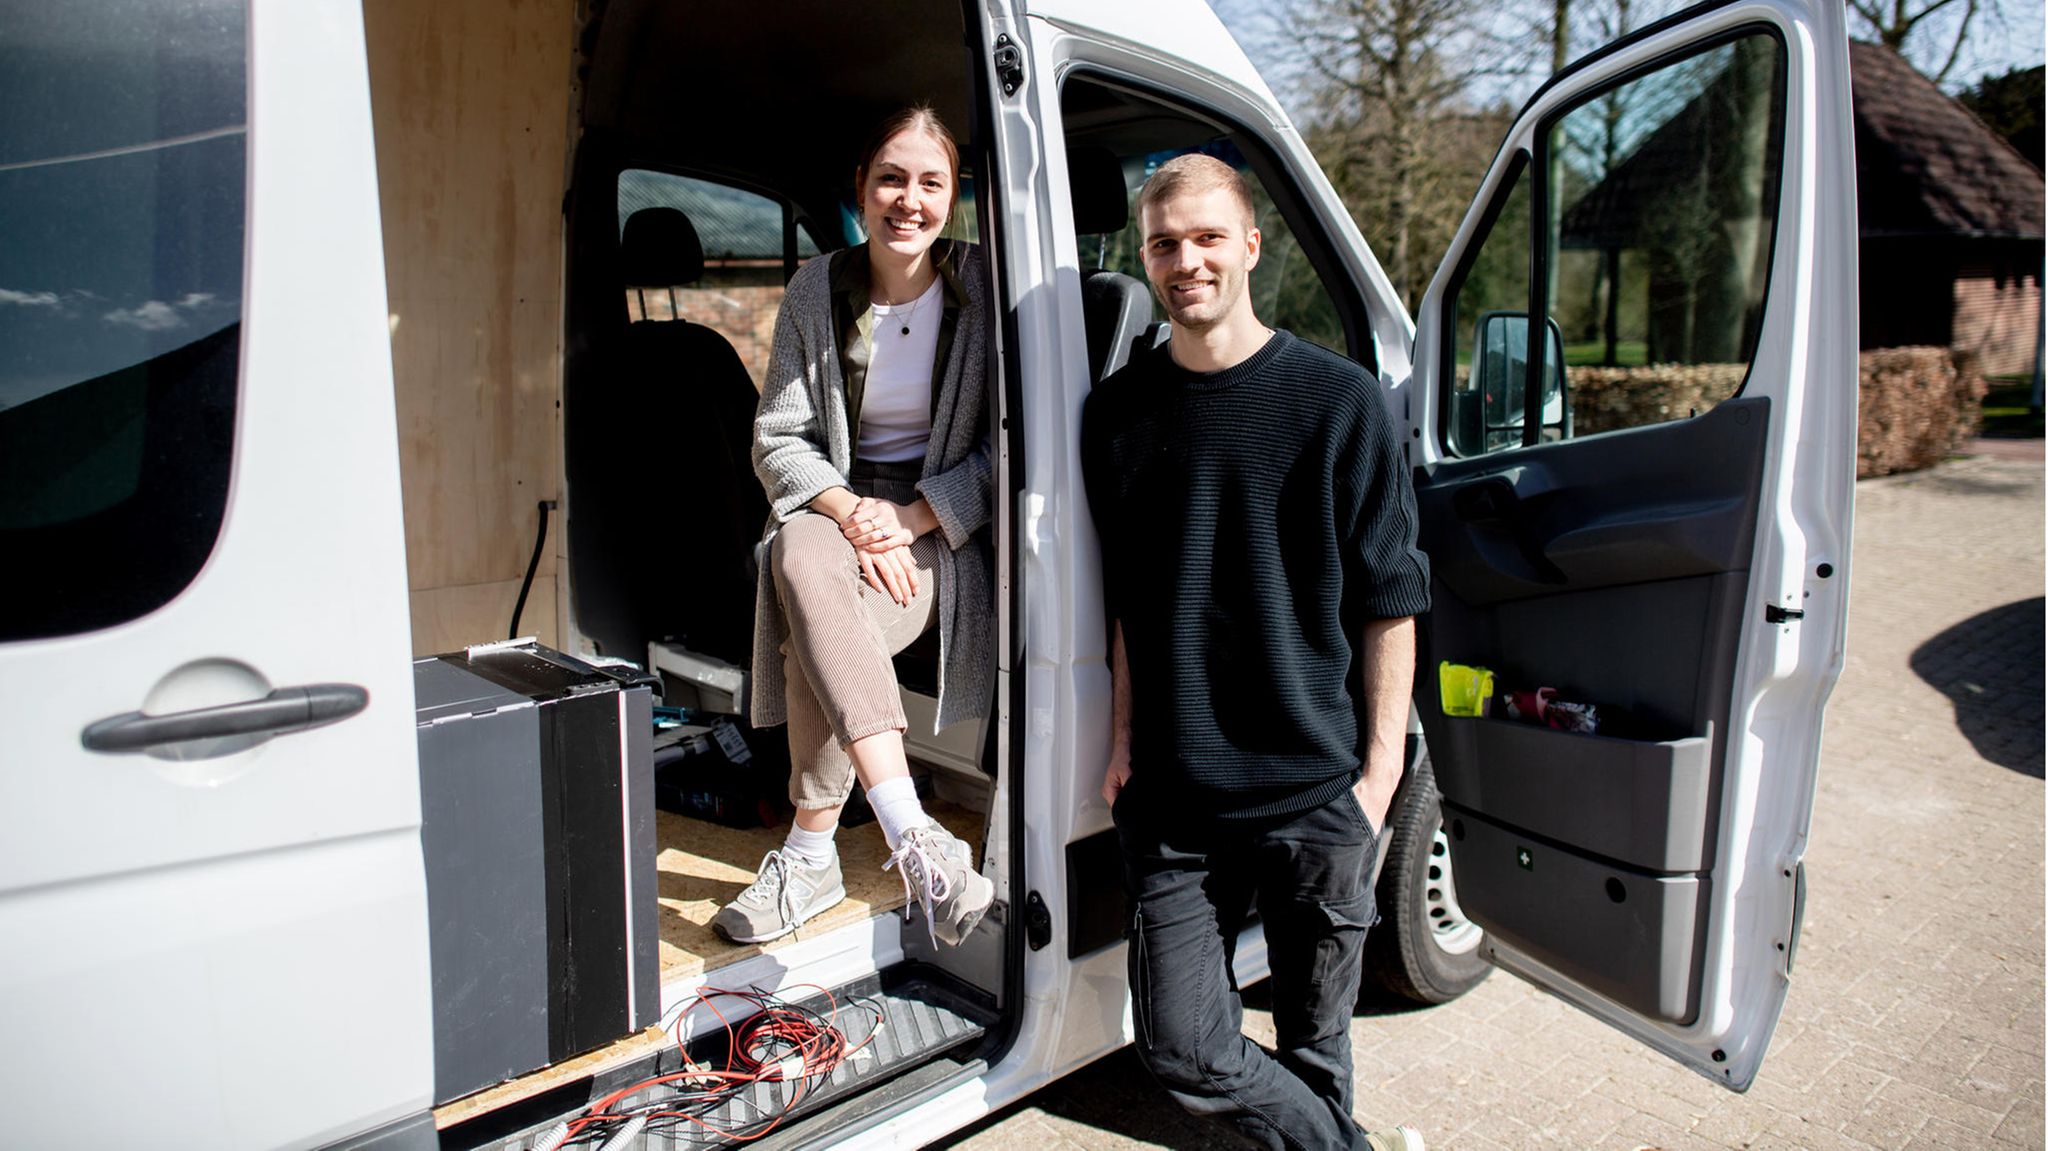 Der Traum vom selbstausgebauten Camper: Diese Paare wagen es